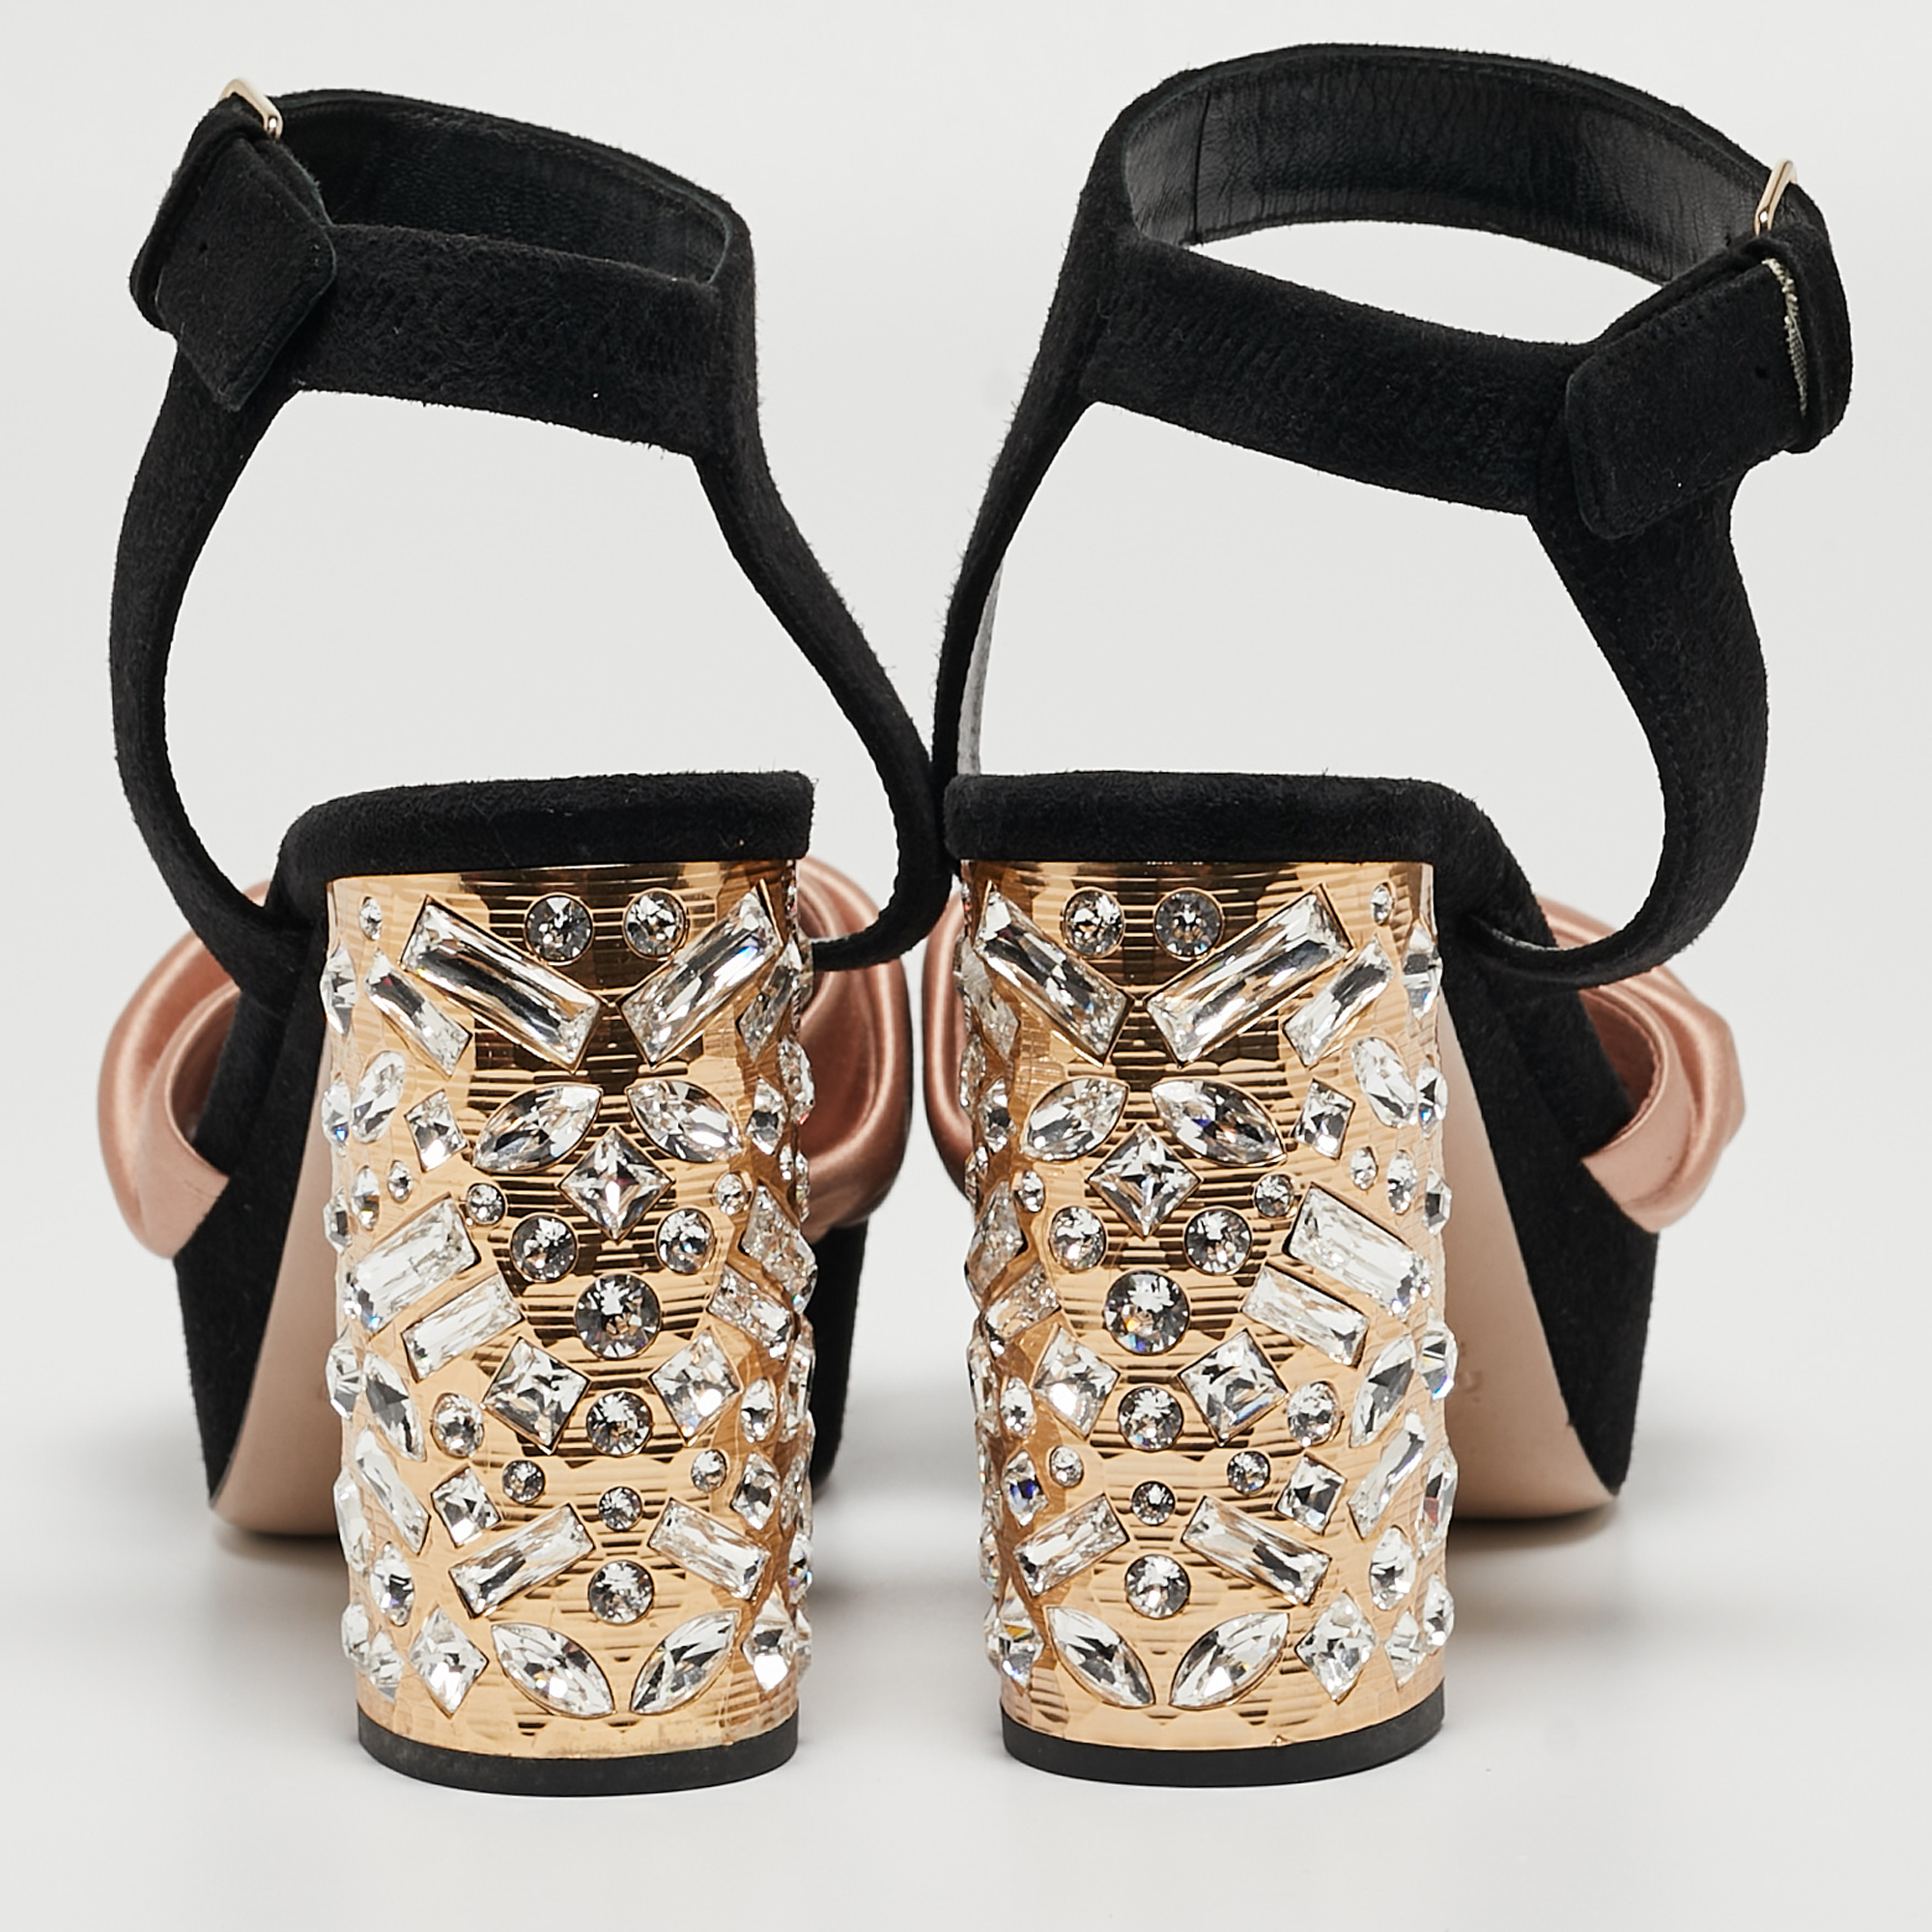 Miu Miu Black/Pink Suede And Satin Bow Crystal Embellished Heel Platform Ankle Strap Sandals Size 37